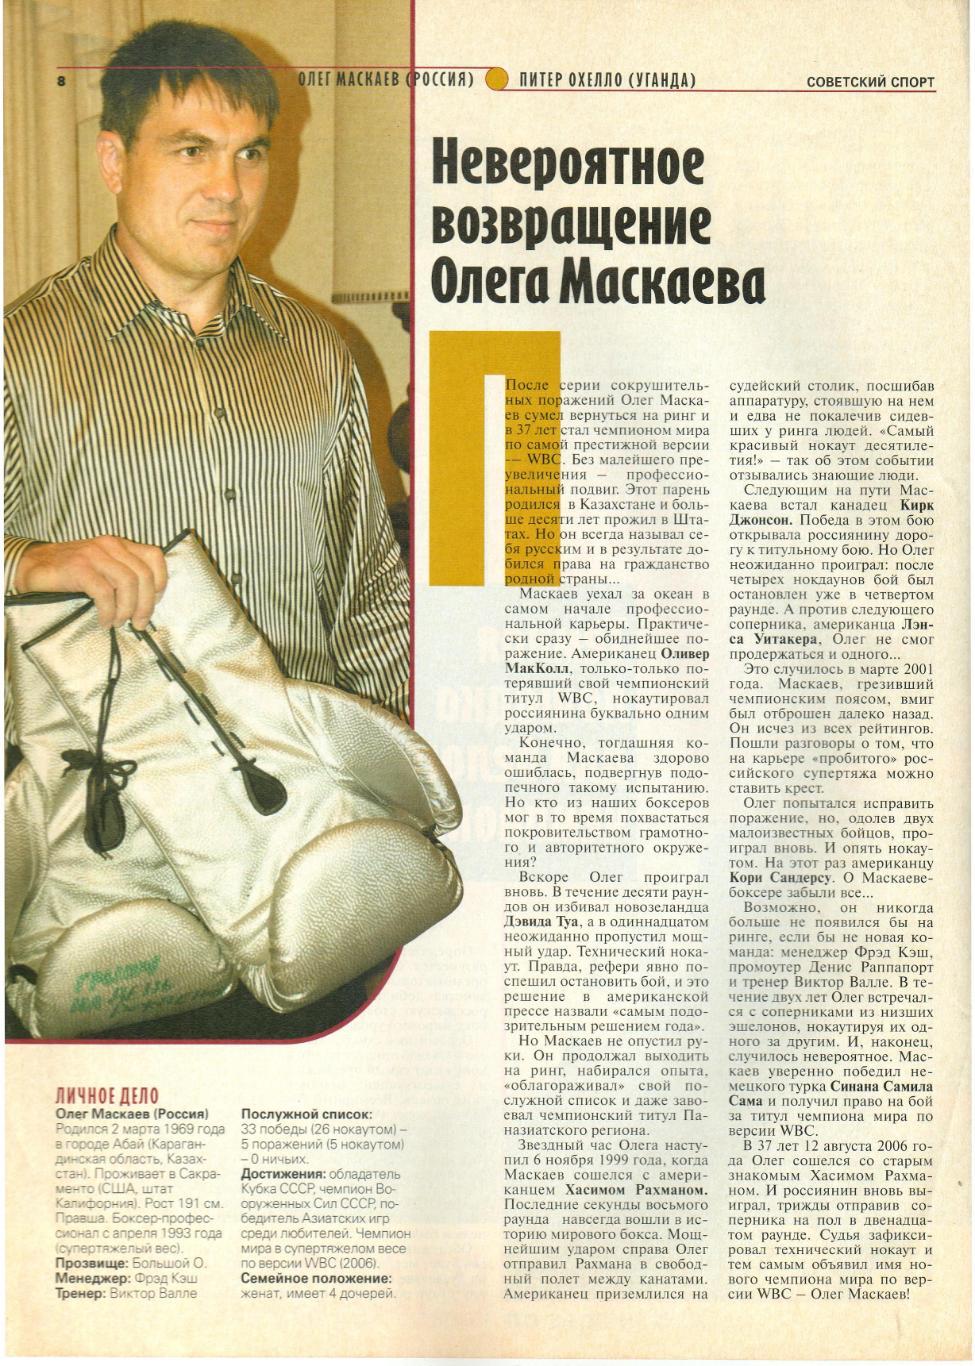 Олег Маскаев – Питер Охелло 10.12.2006 Бой за титул чемпиона WBC Свыше 90,7 кг 2